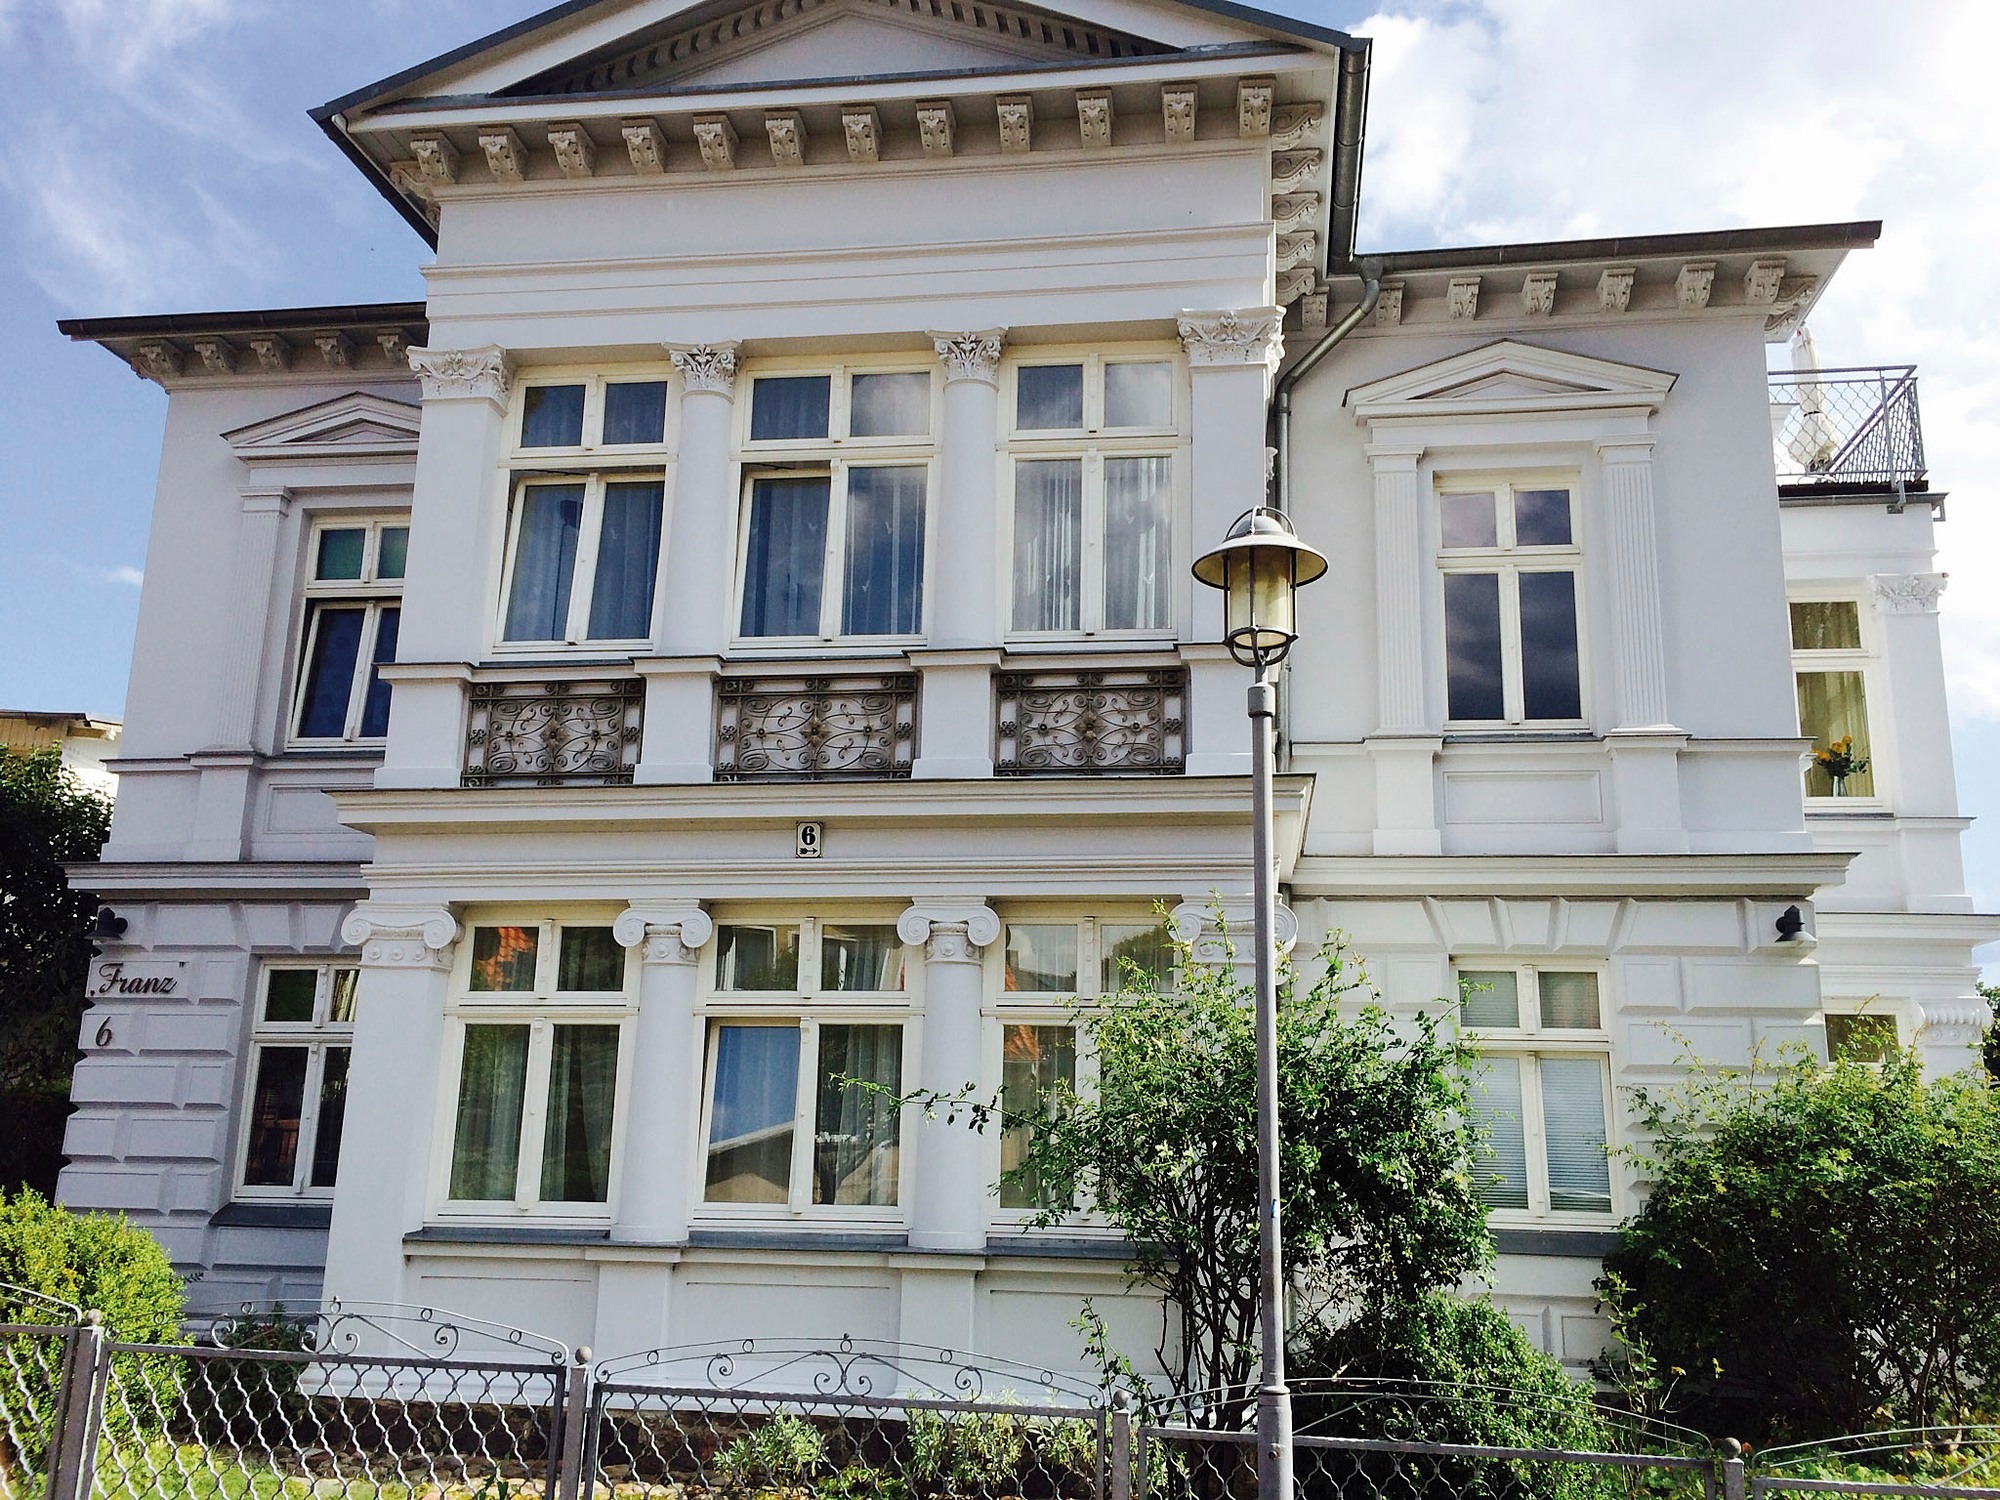 Villa Franz - Seestern Ferienwohnung in Deutschland